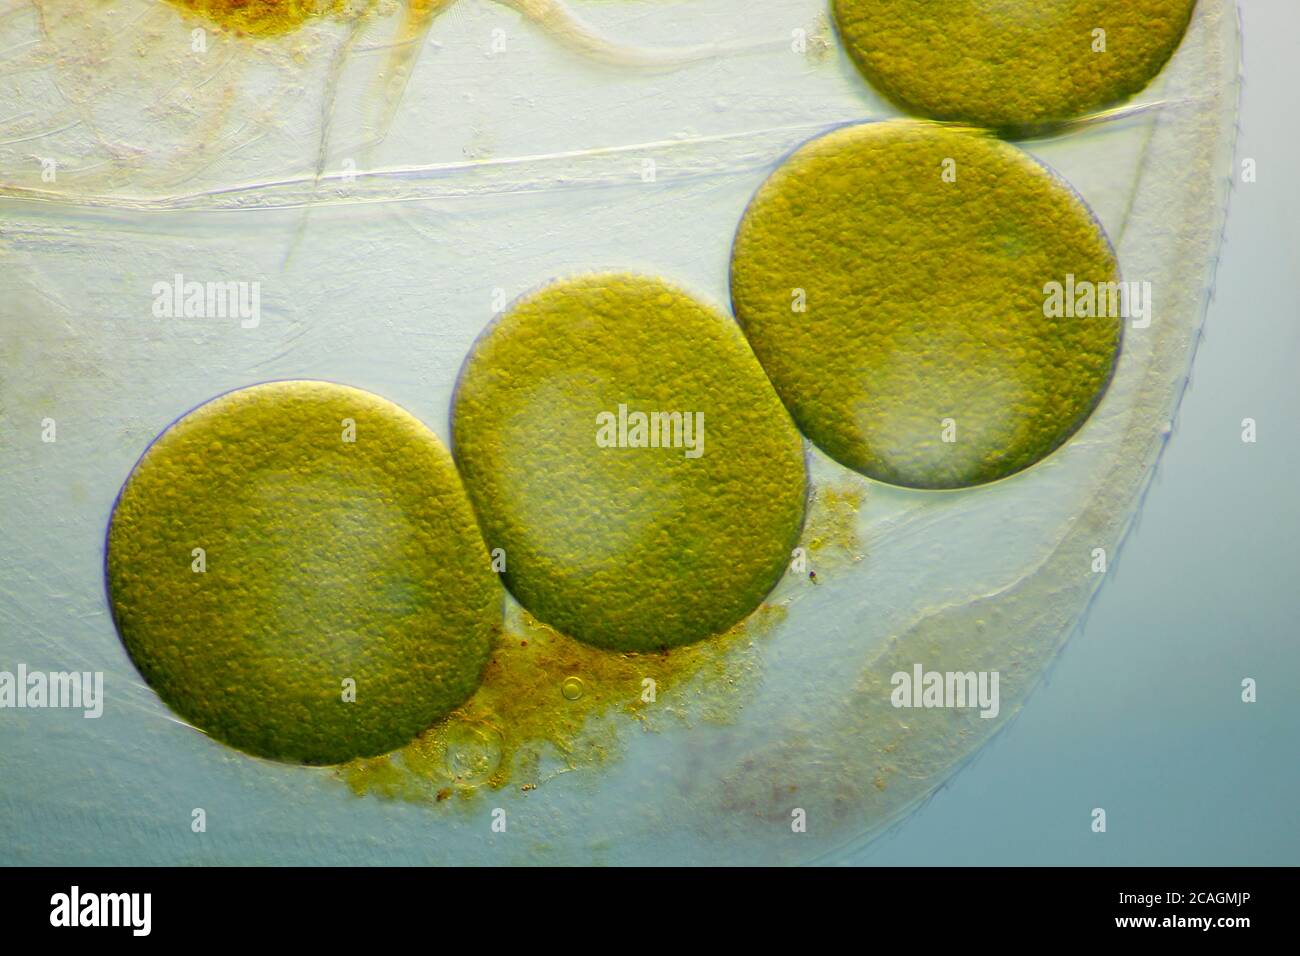 Vue microscopique d'une puce d'eau des oeufs parthénogénétiques à l'intérieur de la coquille (carapace). Éclairage à fond clair avec modulation de contraste. Banque D'Images